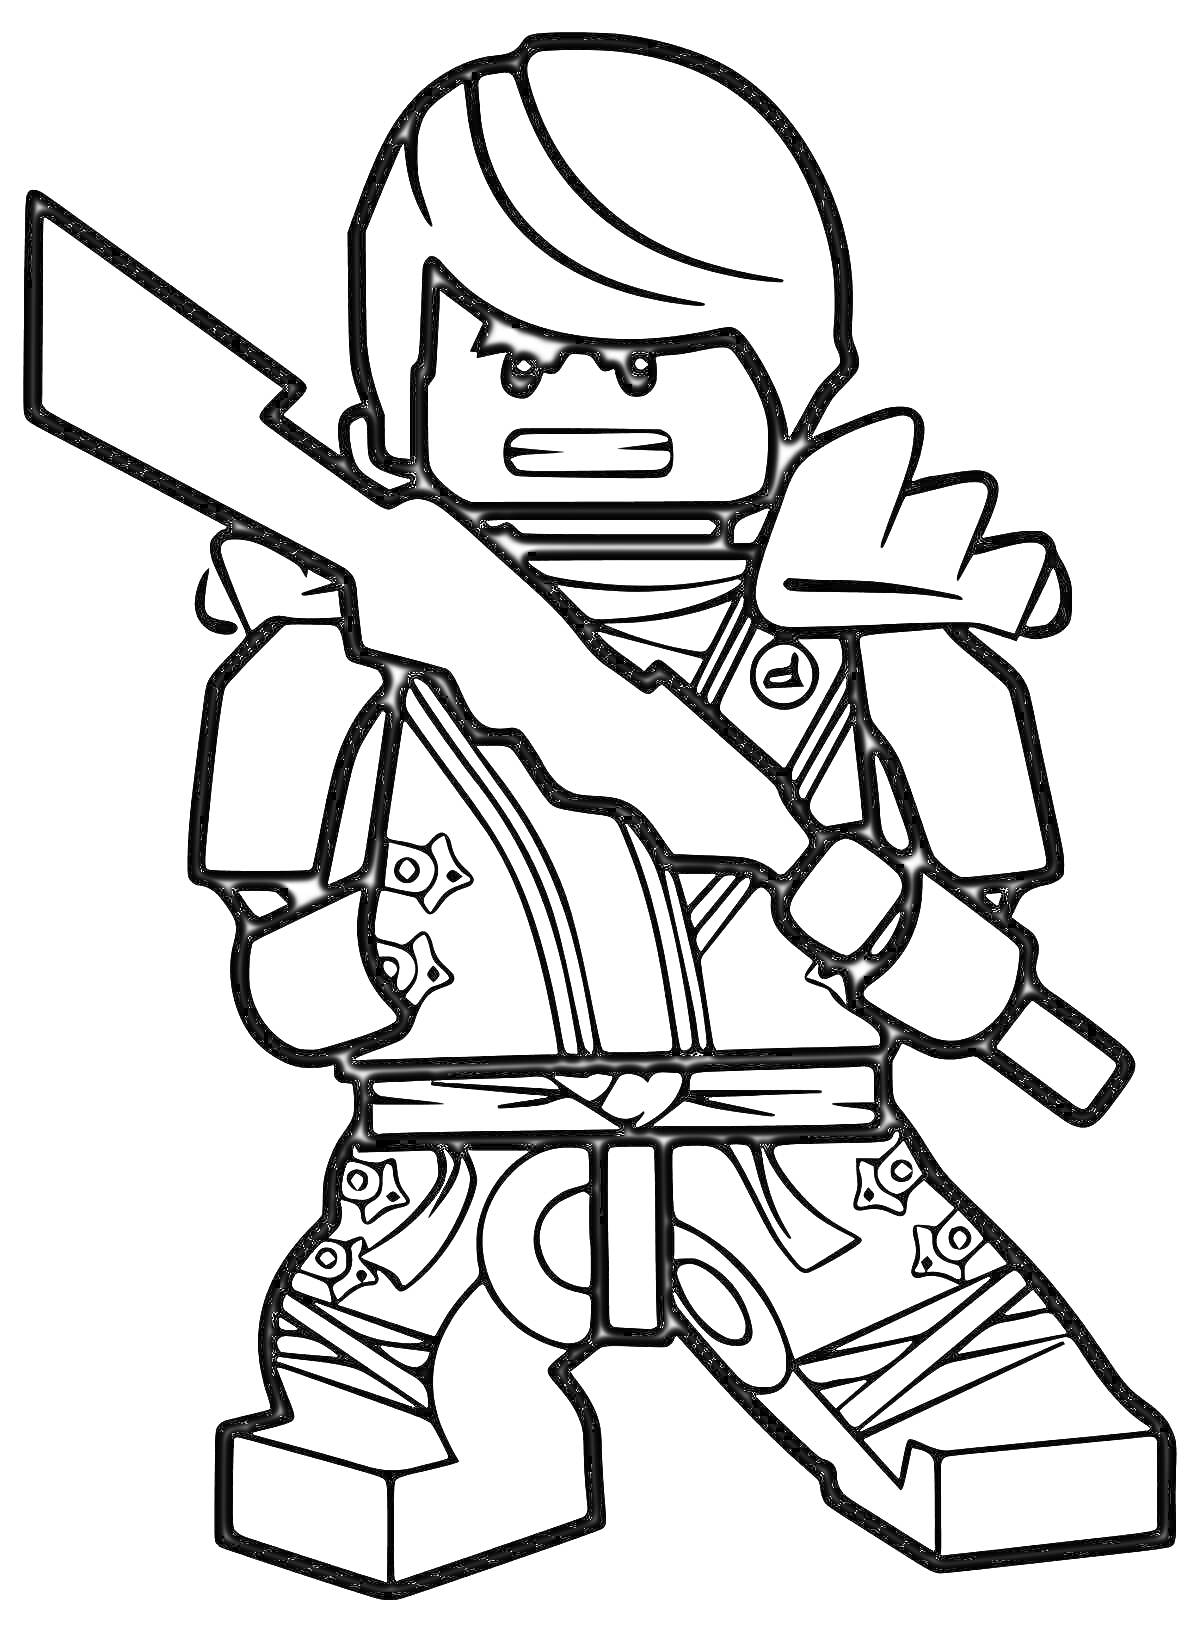 Лего-ниндзя с мечом и сюрикенами